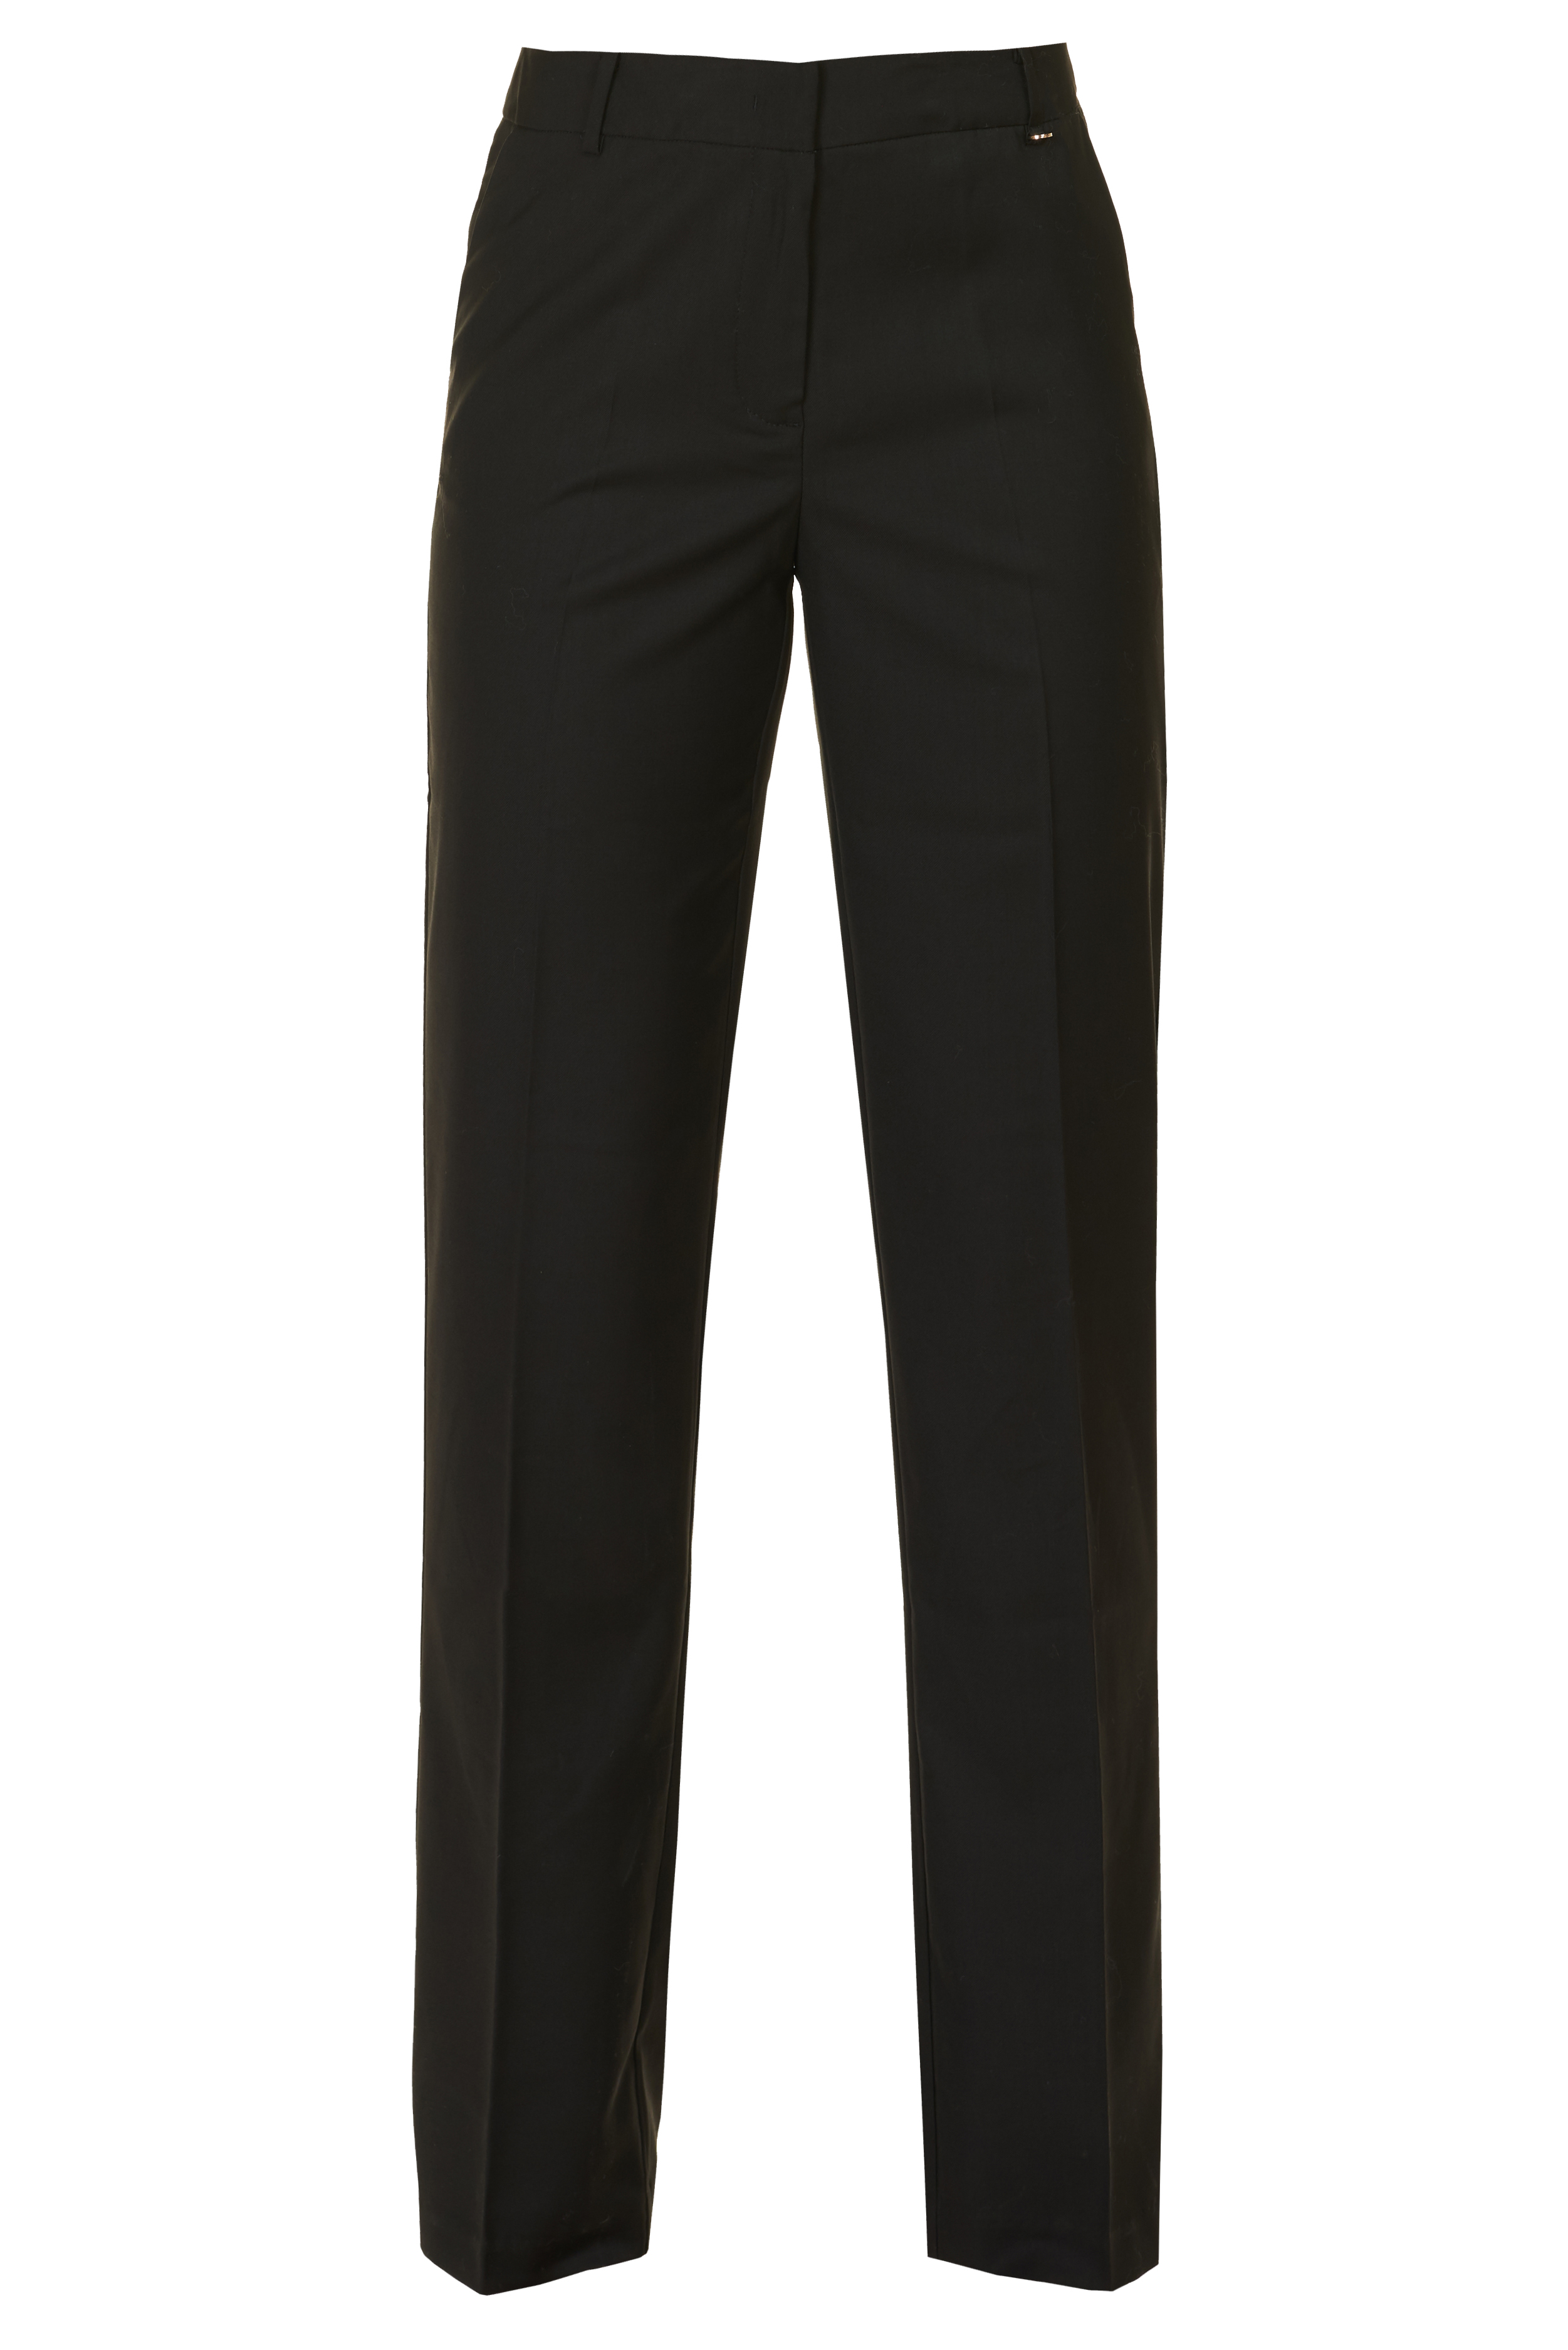 Классические прямые брюки (арт. baon B297527), размер XXL, цвет черный Классические прямые брюки (арт. baon B297527) - фото 3